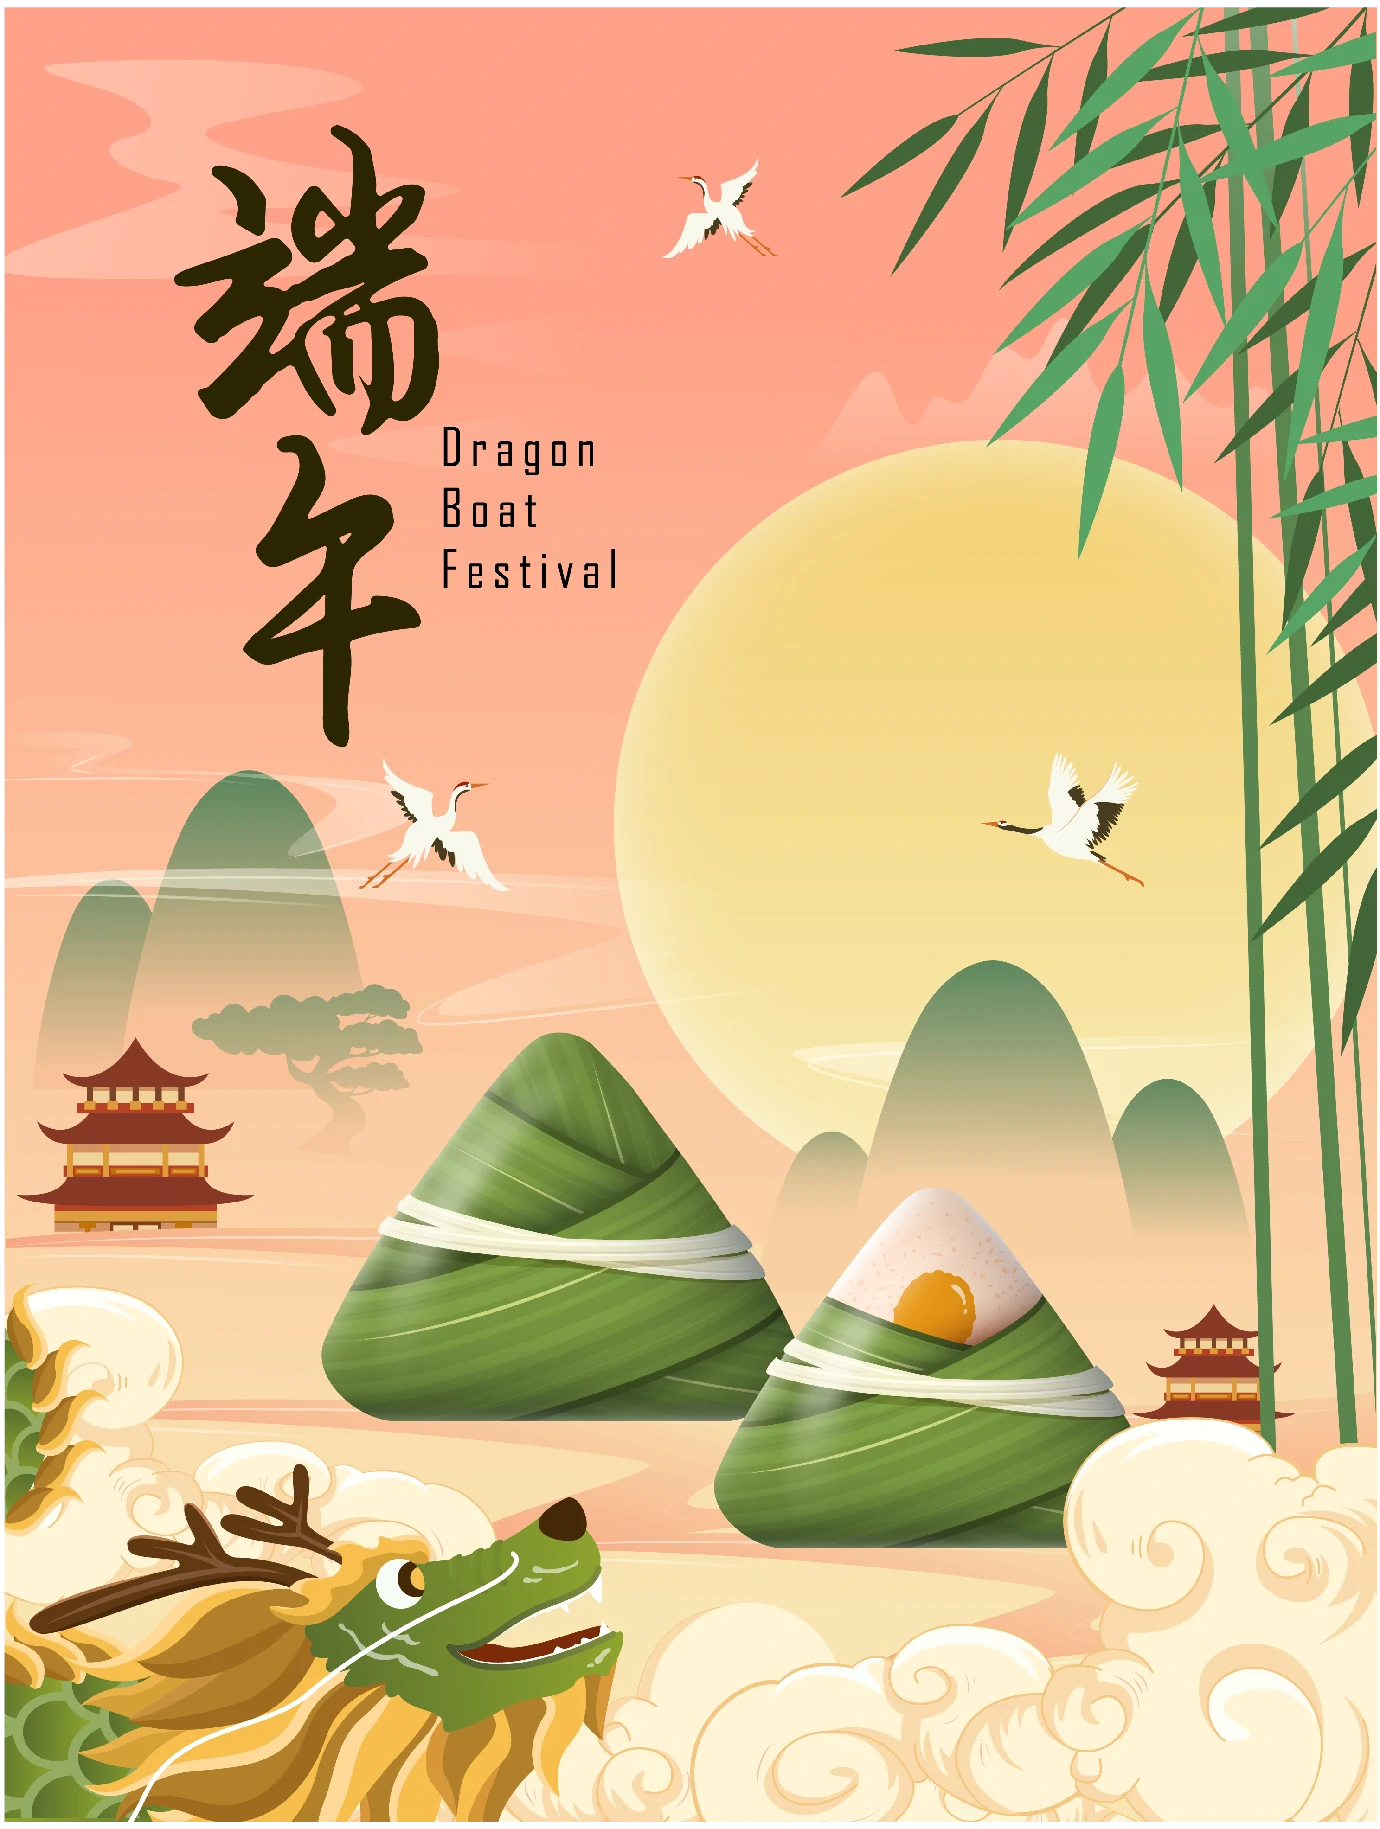 中国传统节日端午节端午安康赛龙舟包粽子插画海报AI矢量设计素材【016】